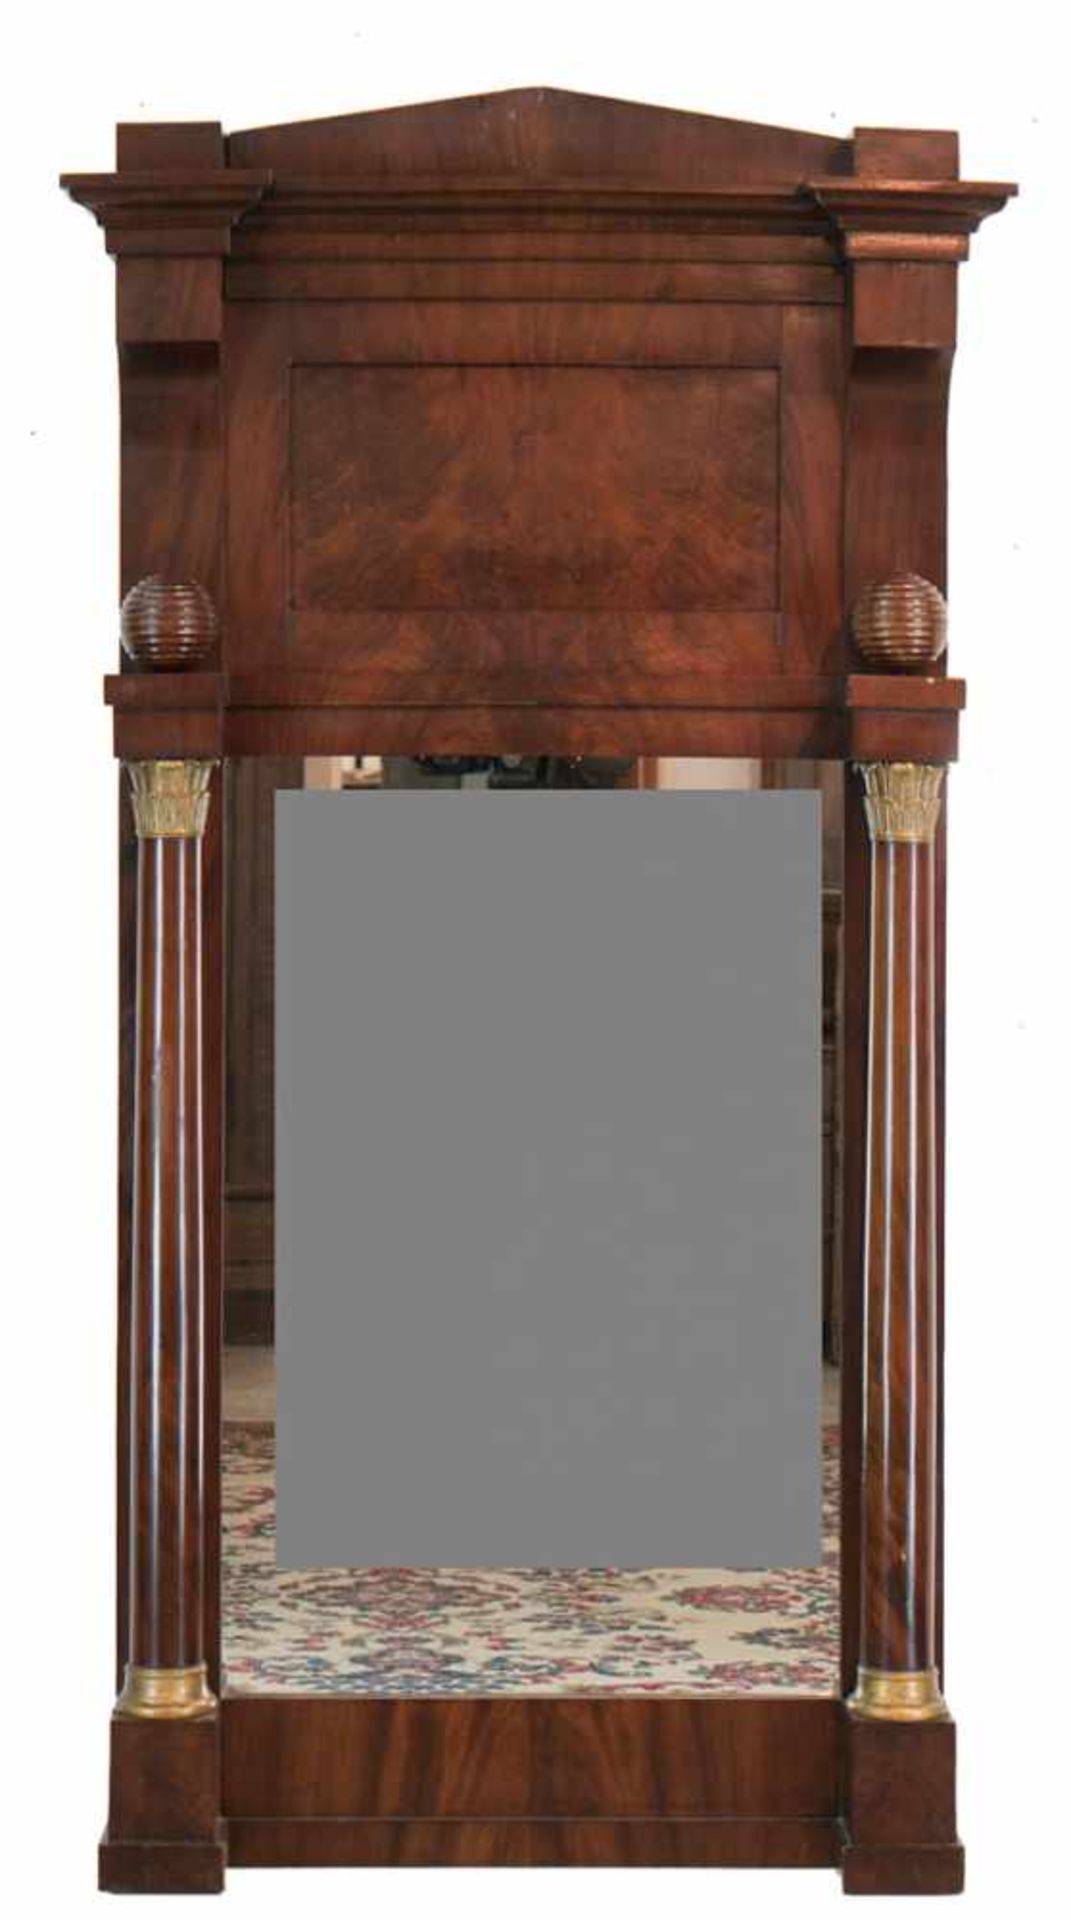 Biedermeier-Spiegel, Mahagoni furniert, beidseitig Vollsäulen mit geschnitzten